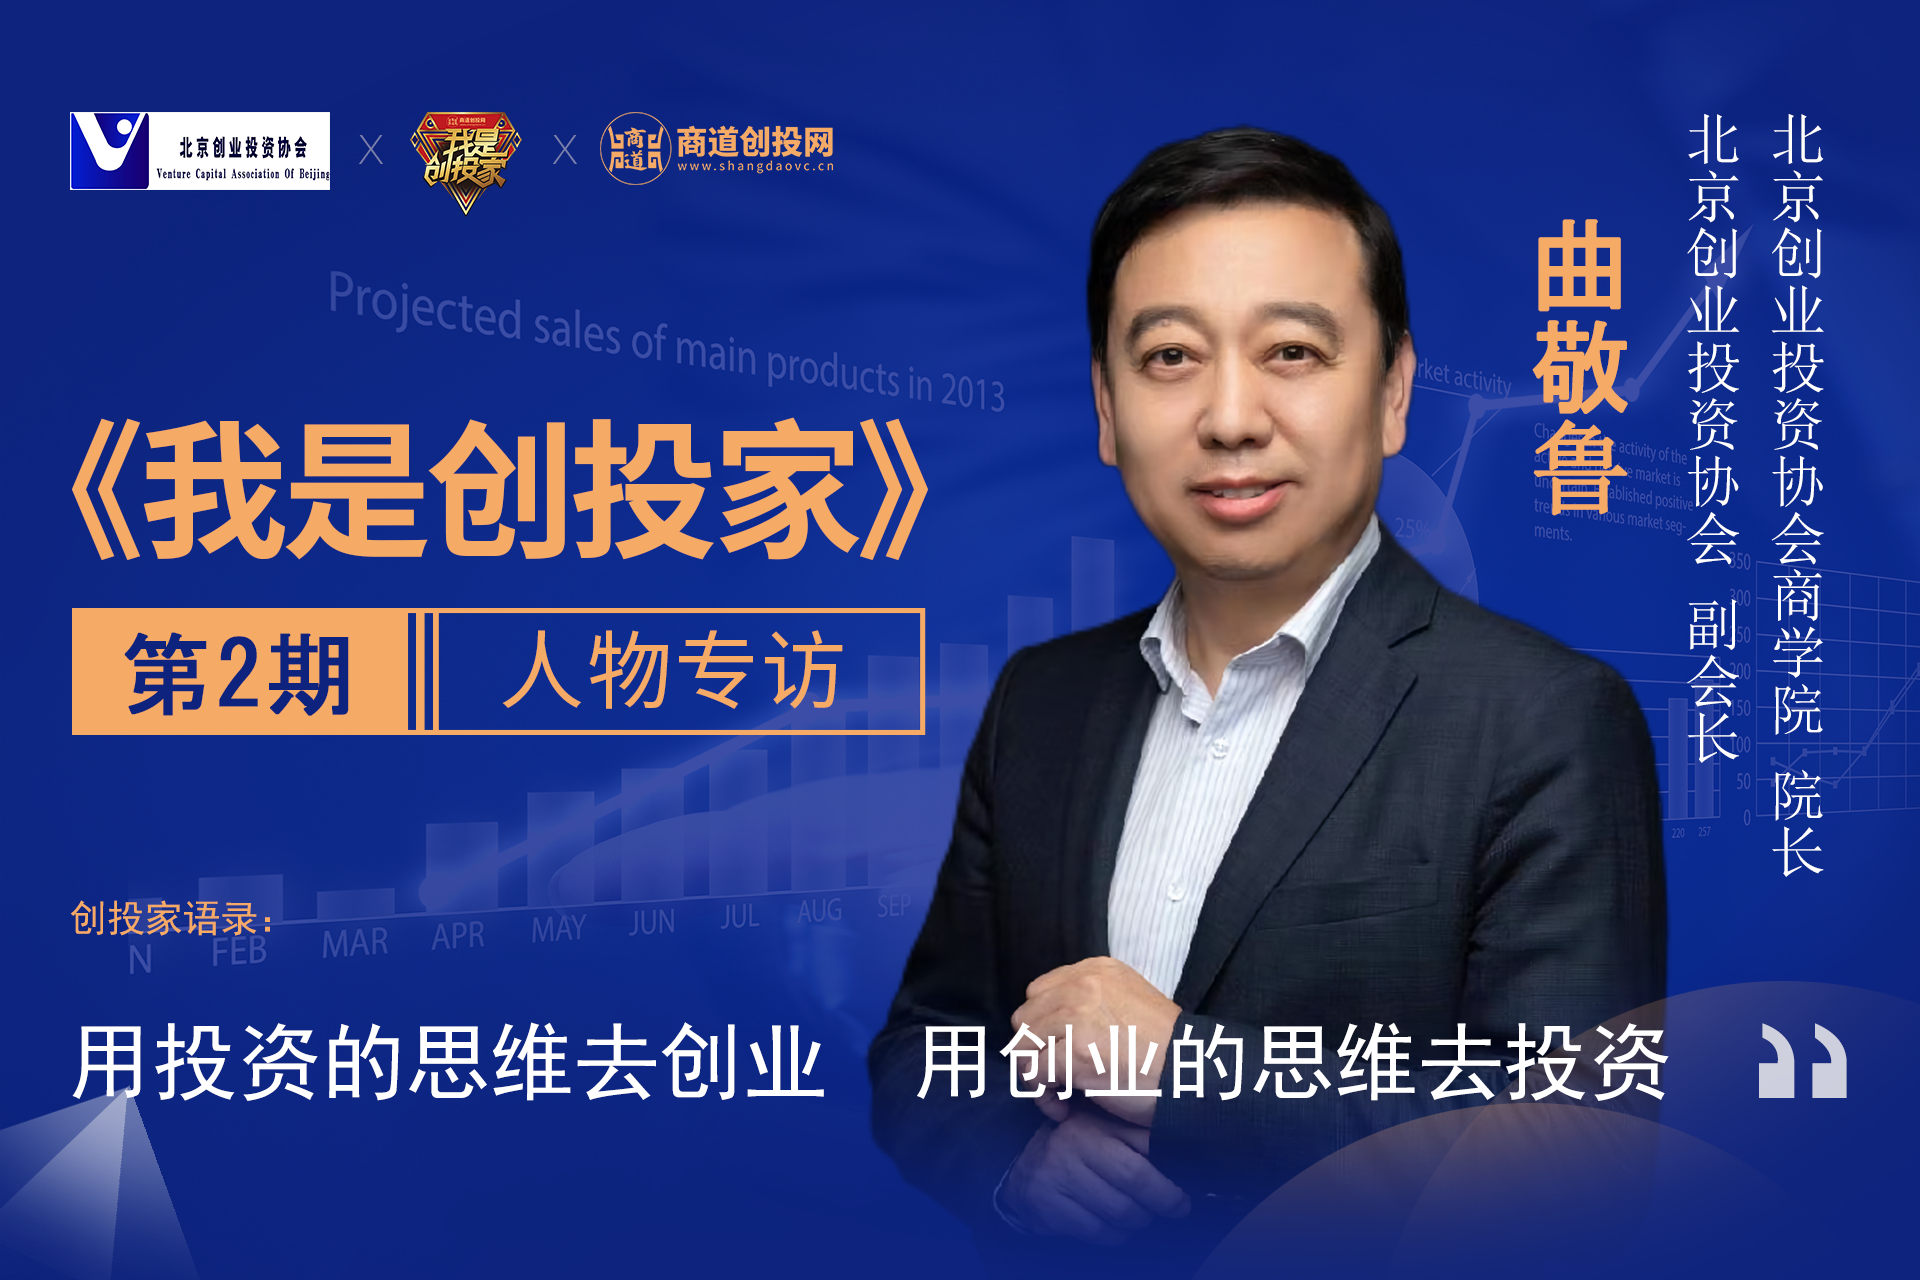 北京创投协会副会长曲敬鲁：用投资的思维去创业 用创业的思维去投资